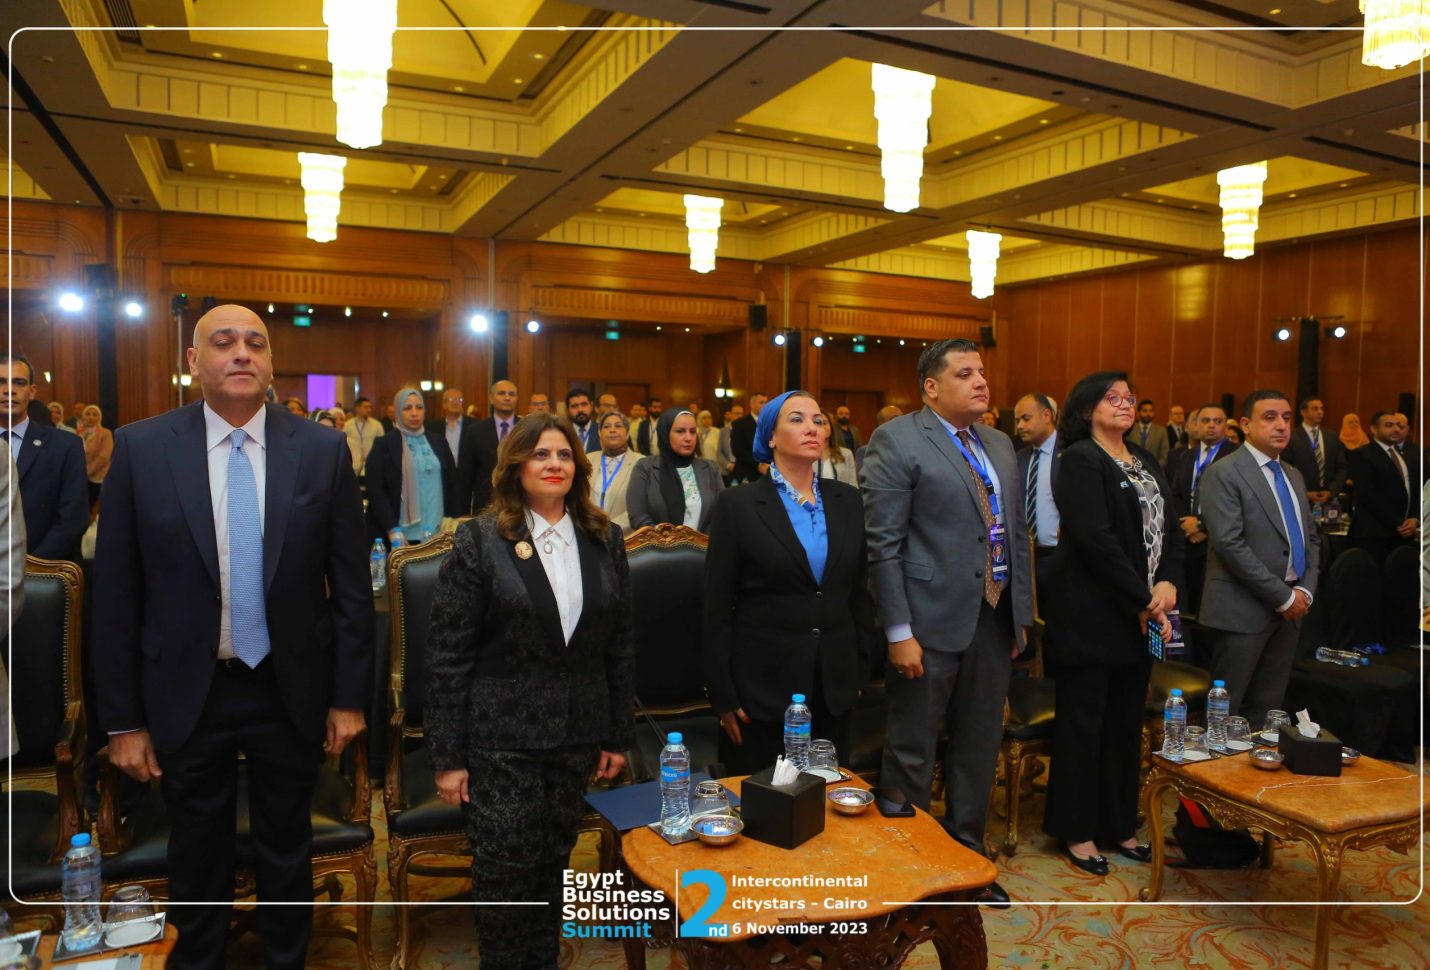 انطلاق فعاليات قمة مصر الثانية لحلول الأعمال بمشاركة وزيرتي البيئة والهجرة